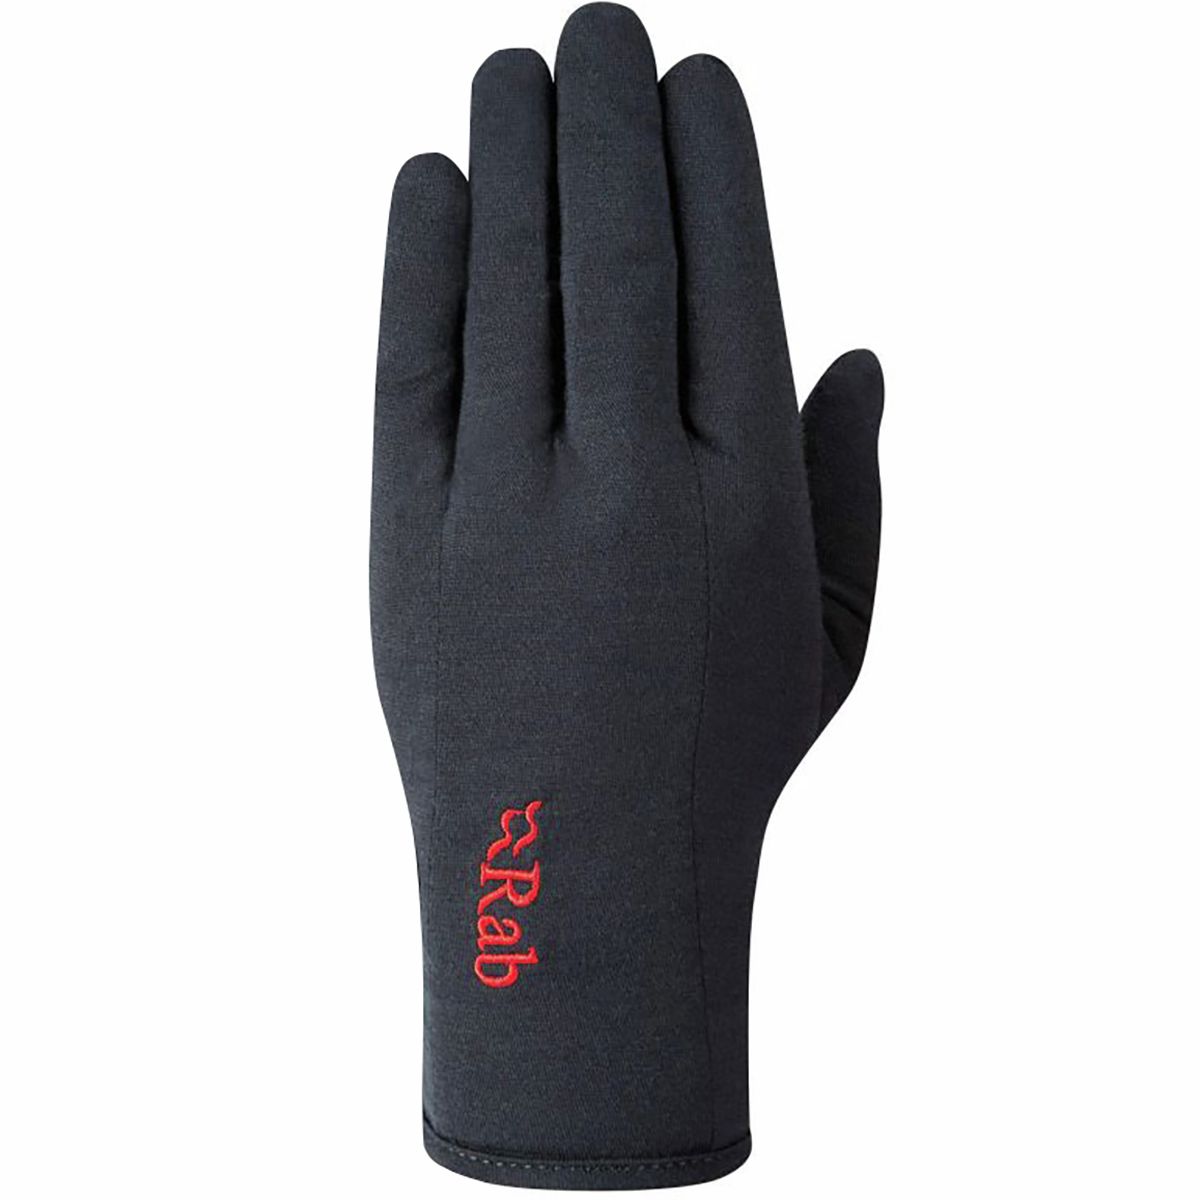 Rab Merino 160 Glove - Men's